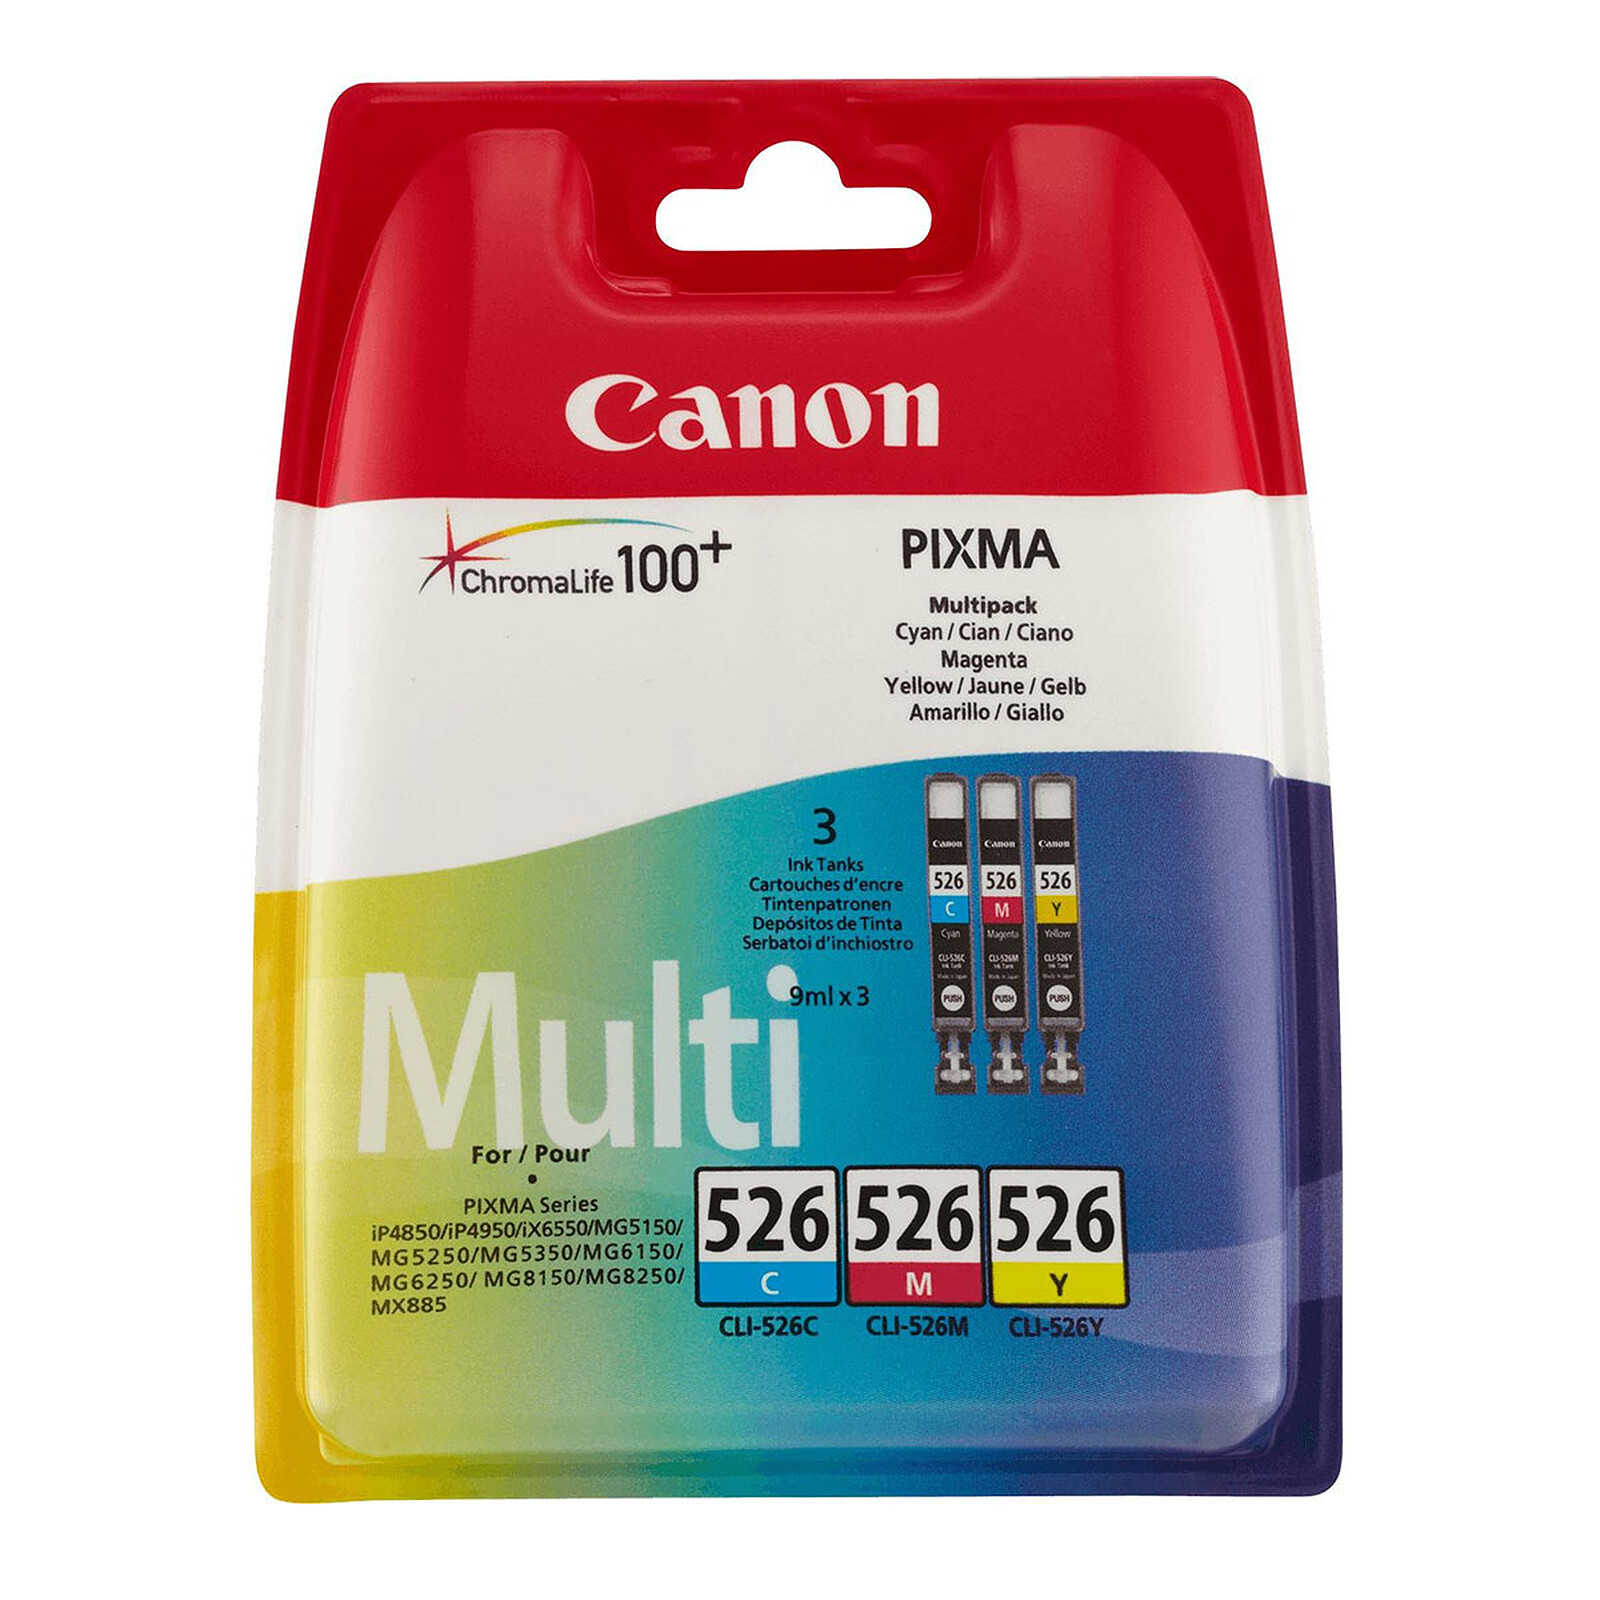 Canon CLI-526 Printer - LDLC - cartridge